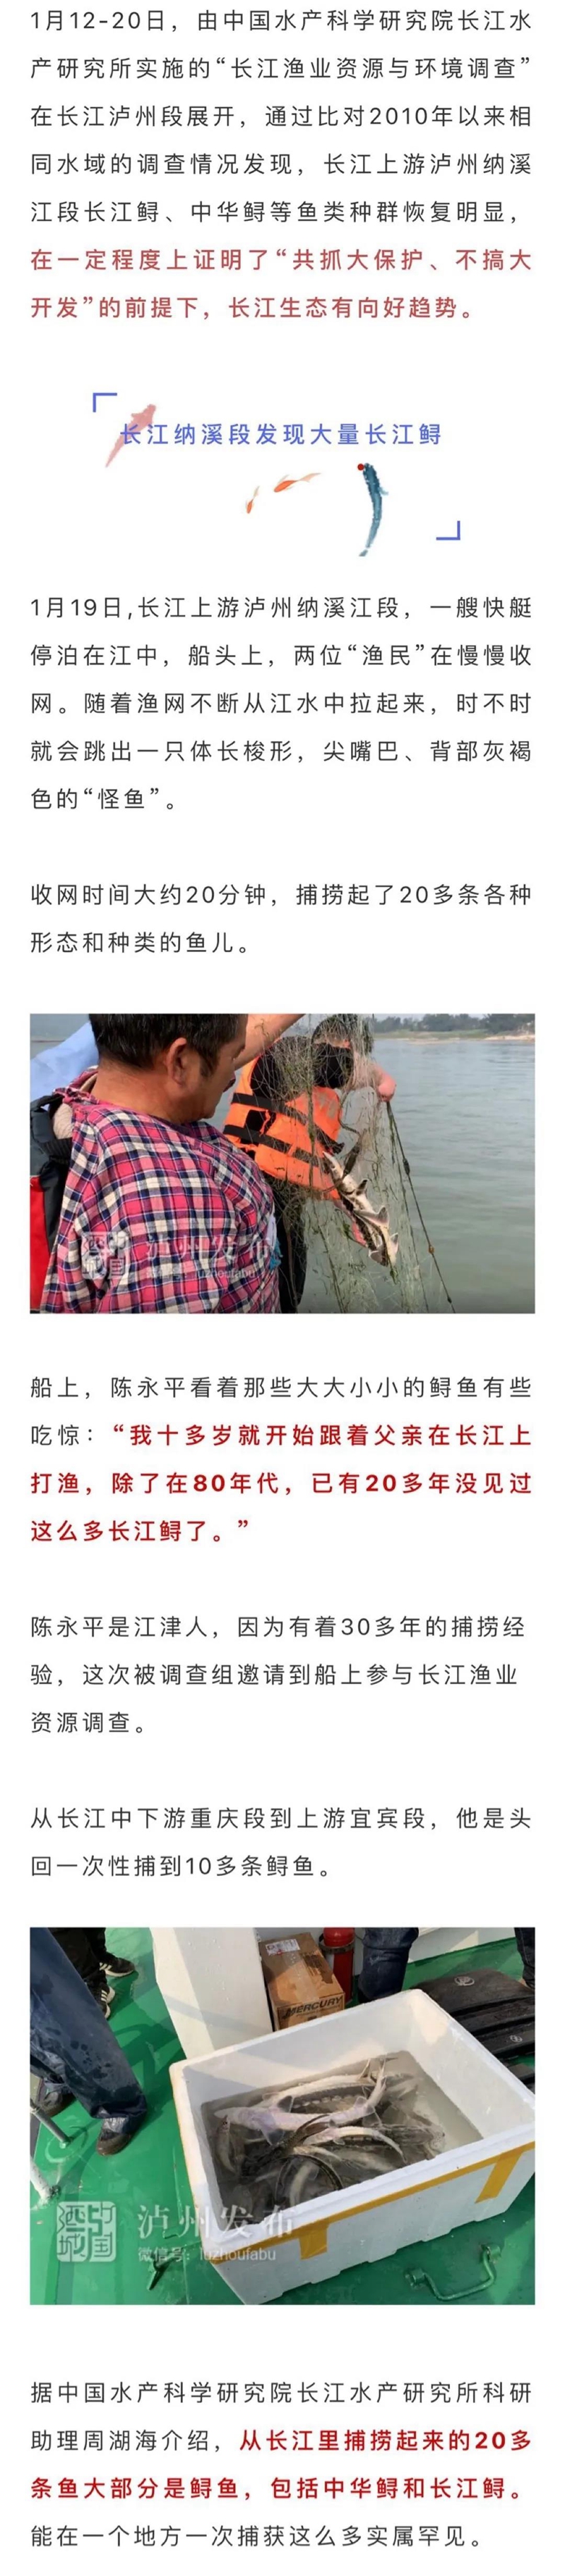 长江生态逐步向好，国家一级保护动物长江鲟、中华鲟在泸州扎堆出现(图2)